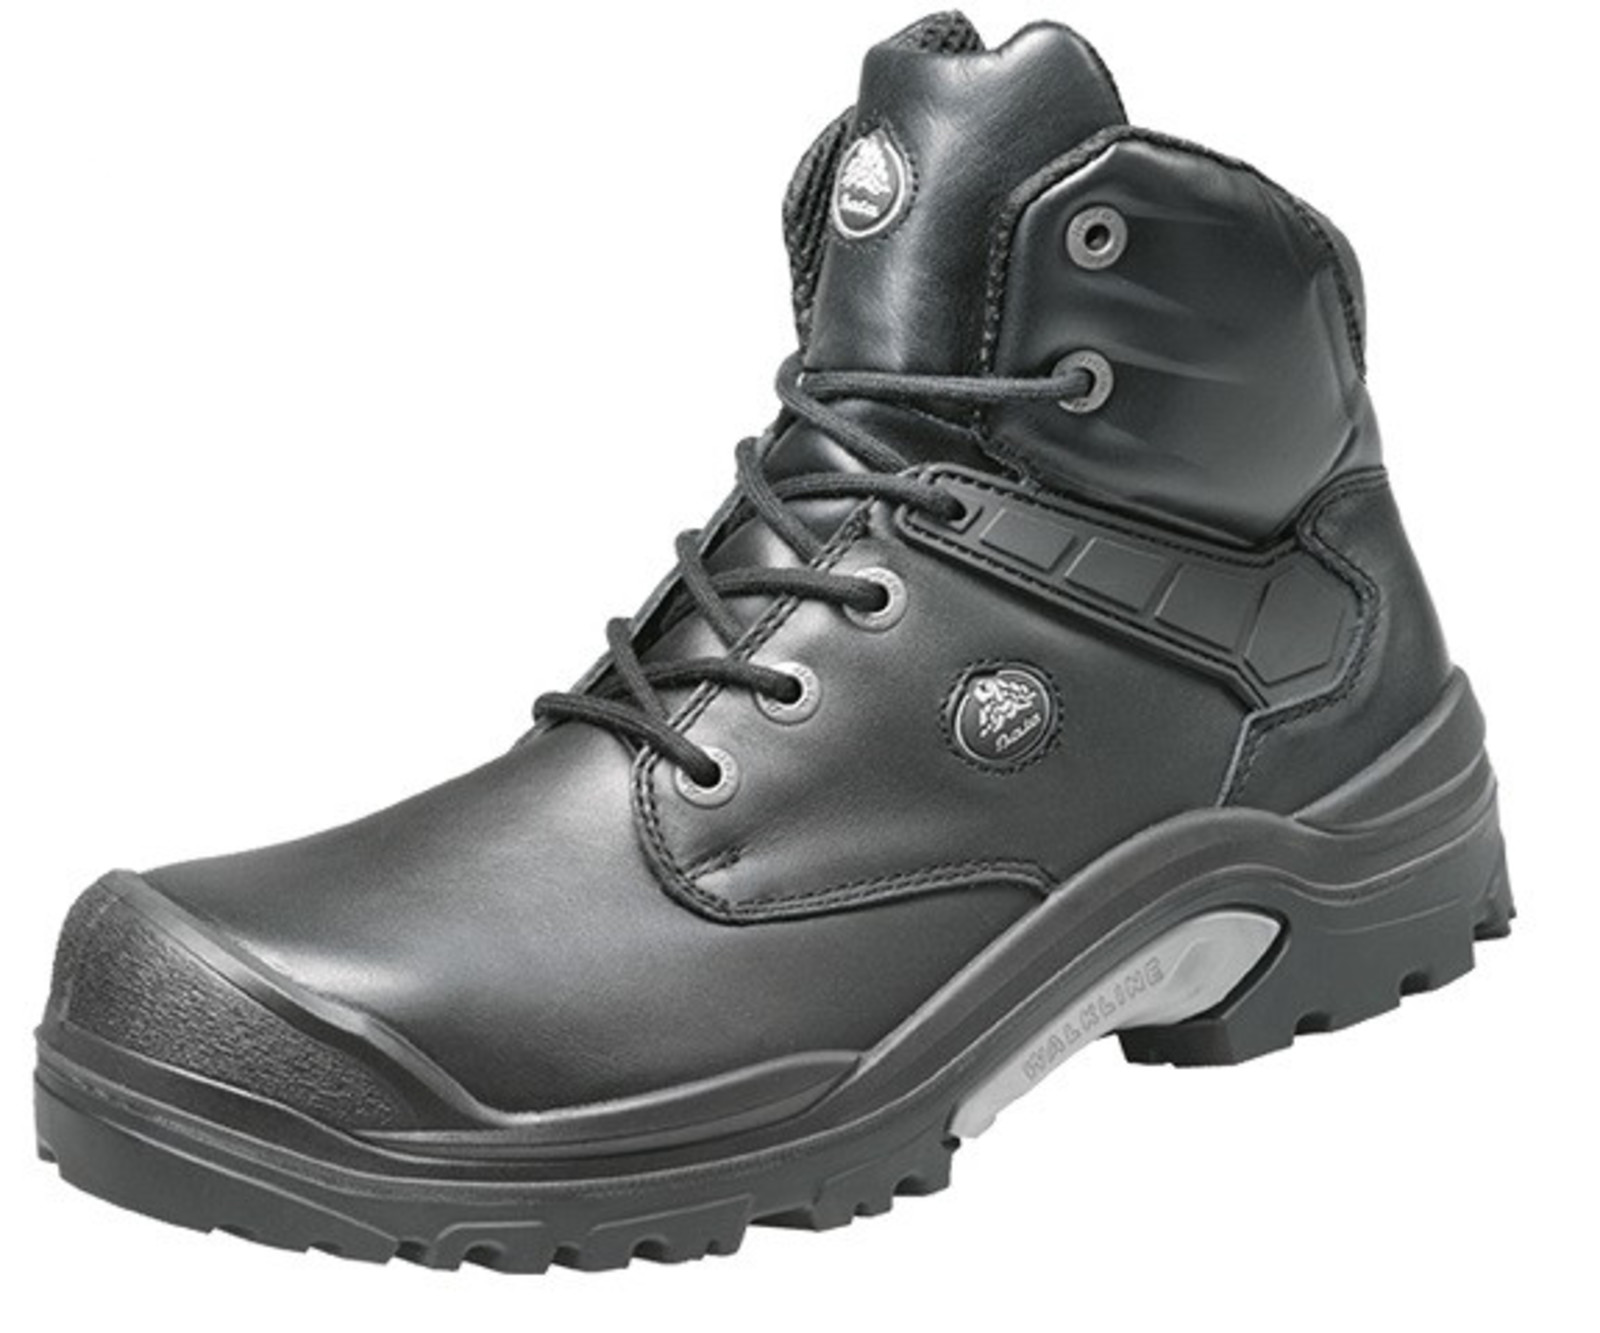 Bezpečnostná obuv Baťa PWR S3 - veľkosť: 44, farba: čierna